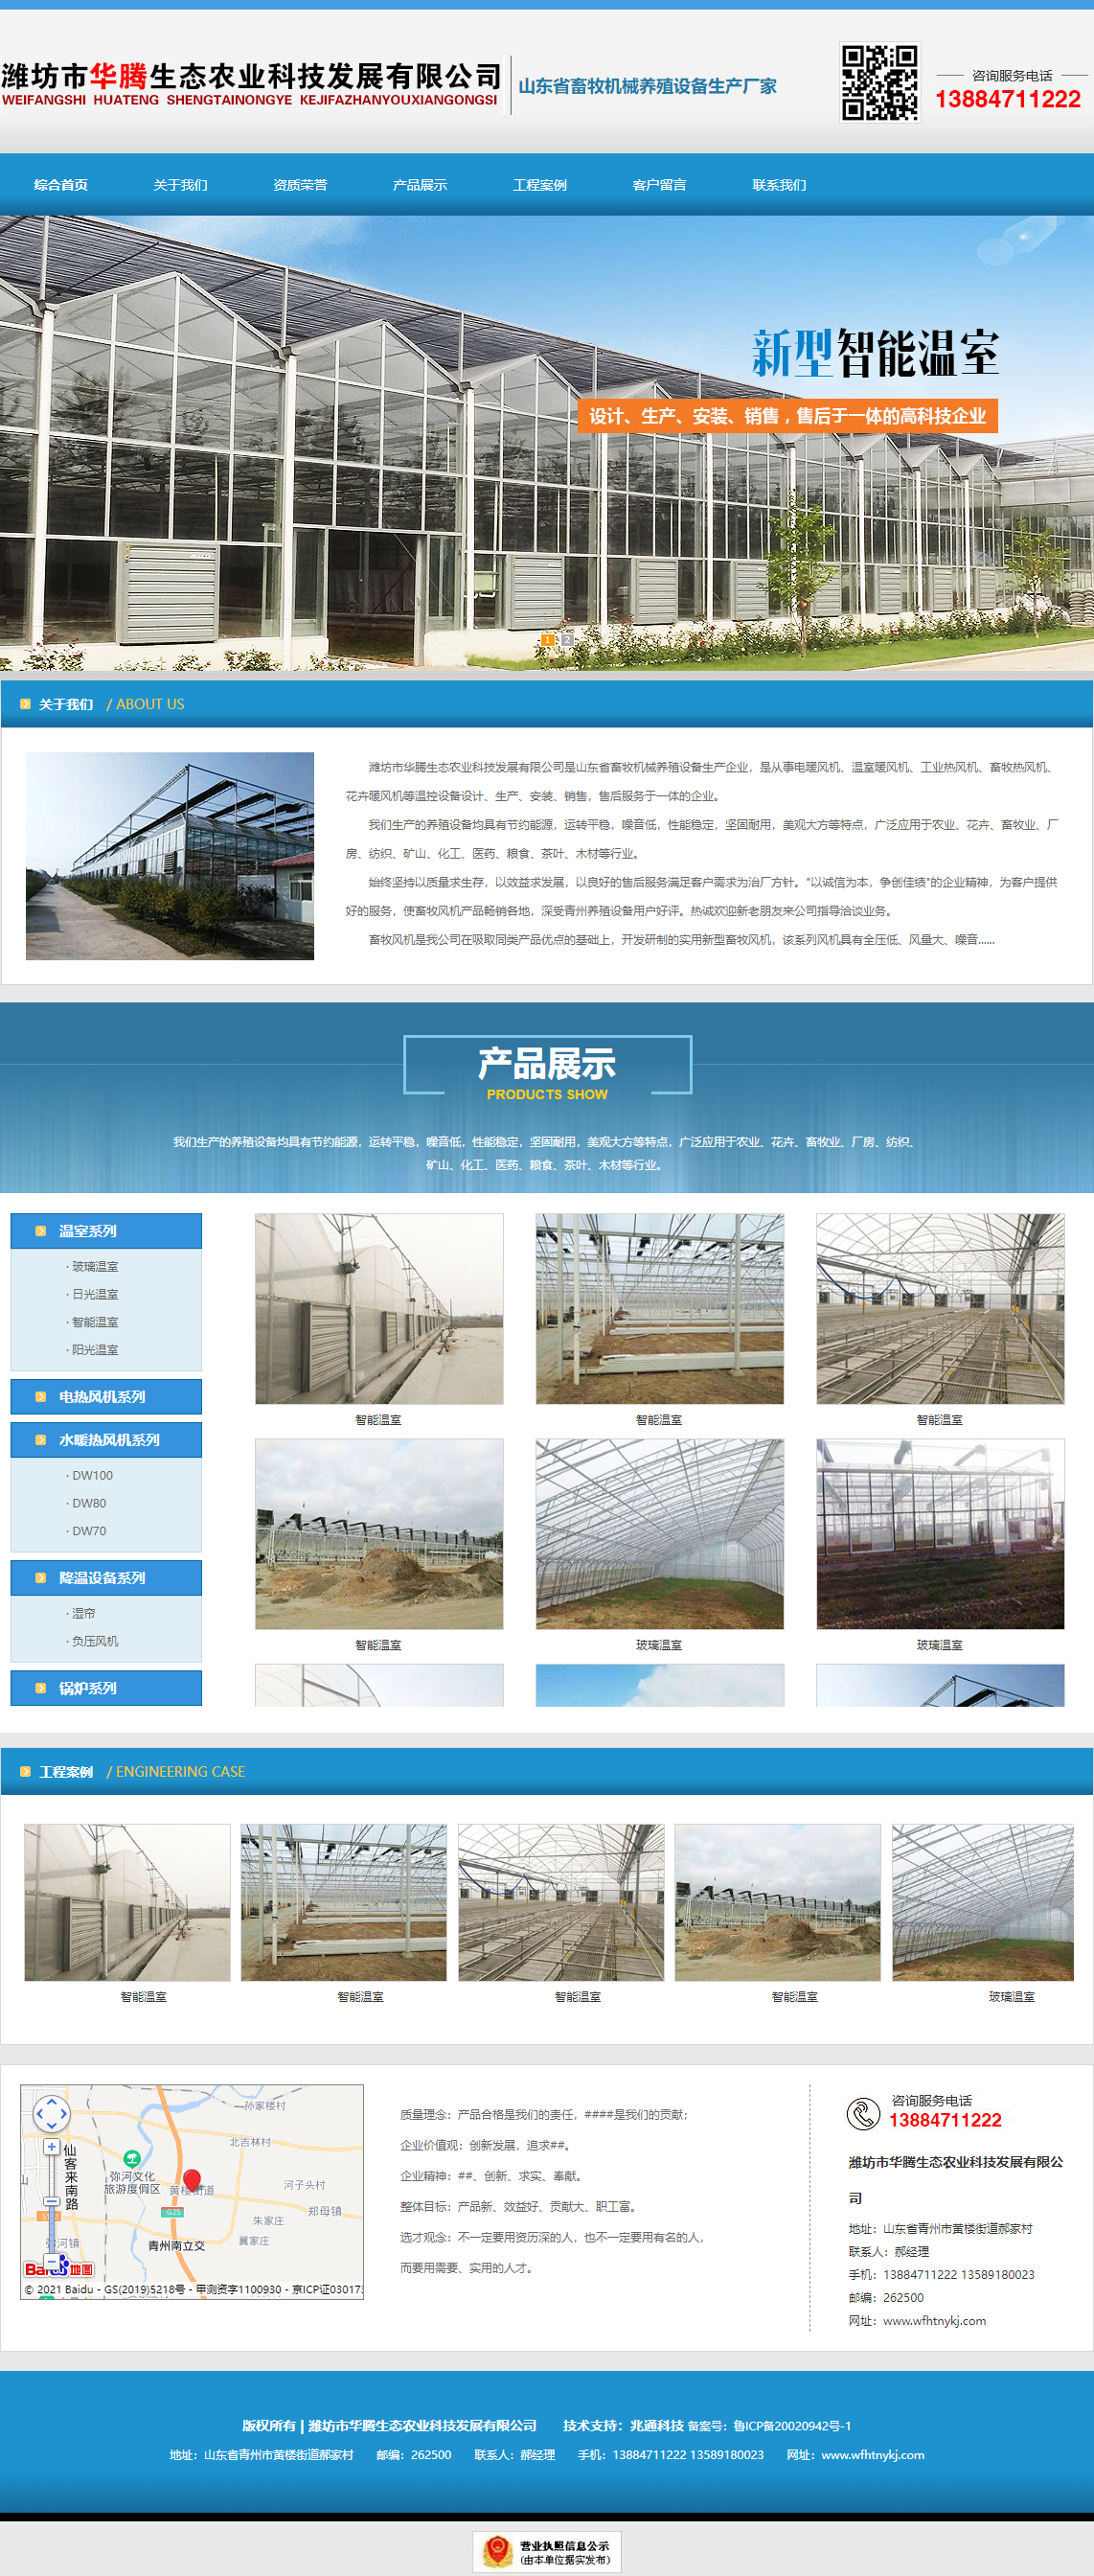 潍坊市华腾生态农业科技发展有限公司网站案例